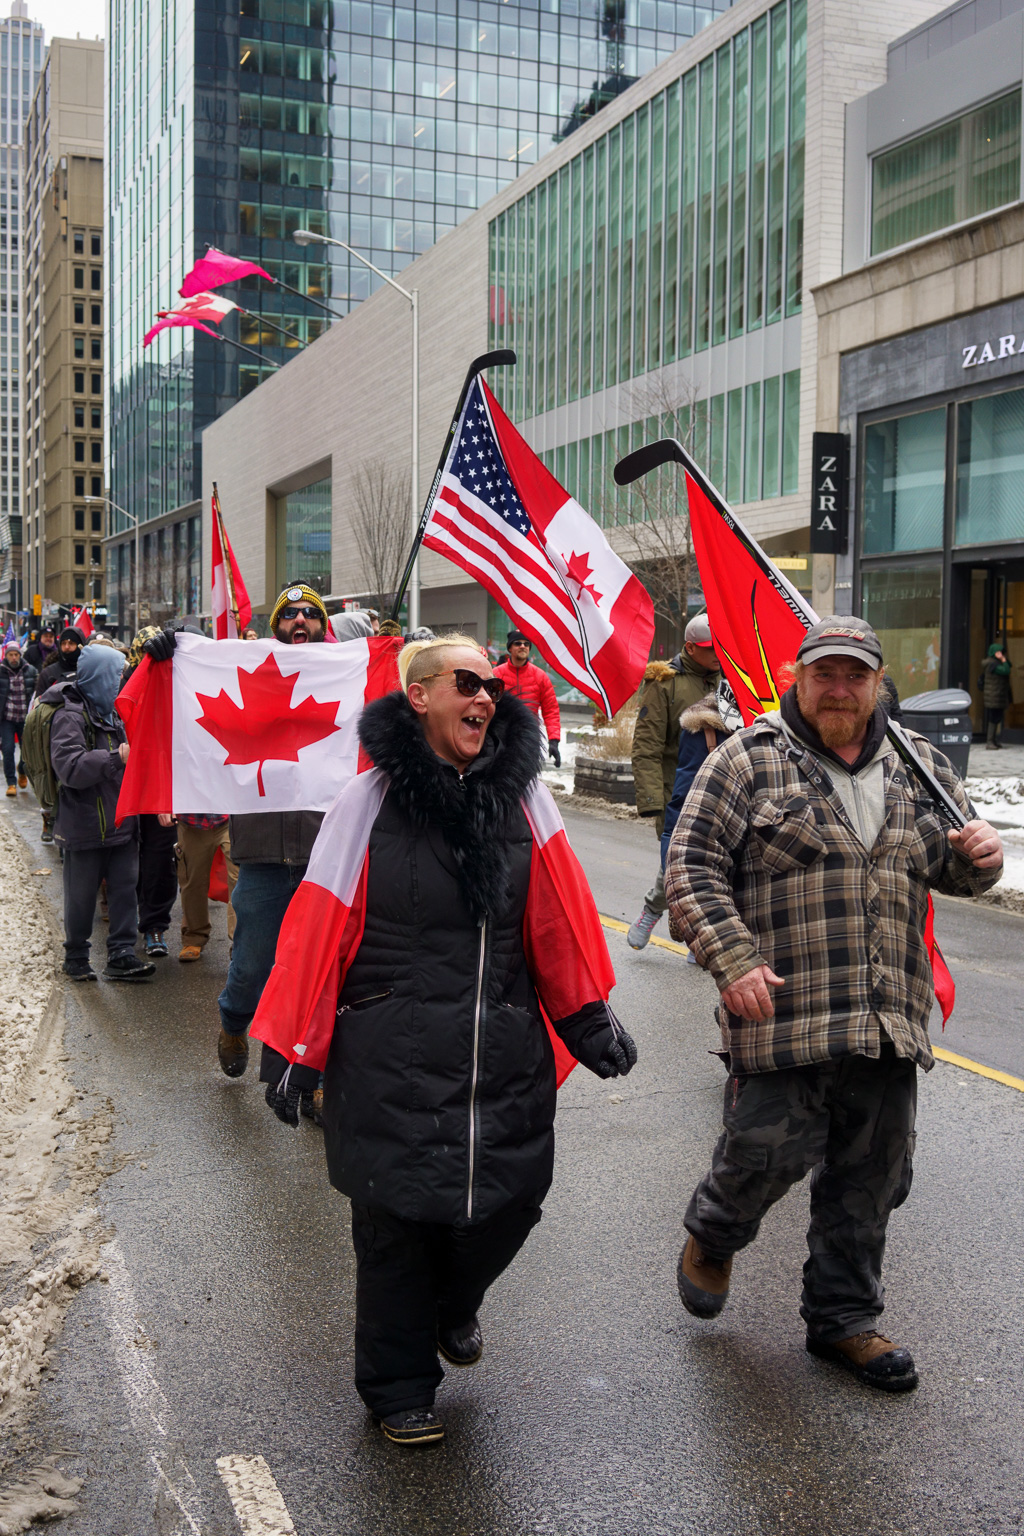 Anti-vax marchers on Toronto's Bloor Street